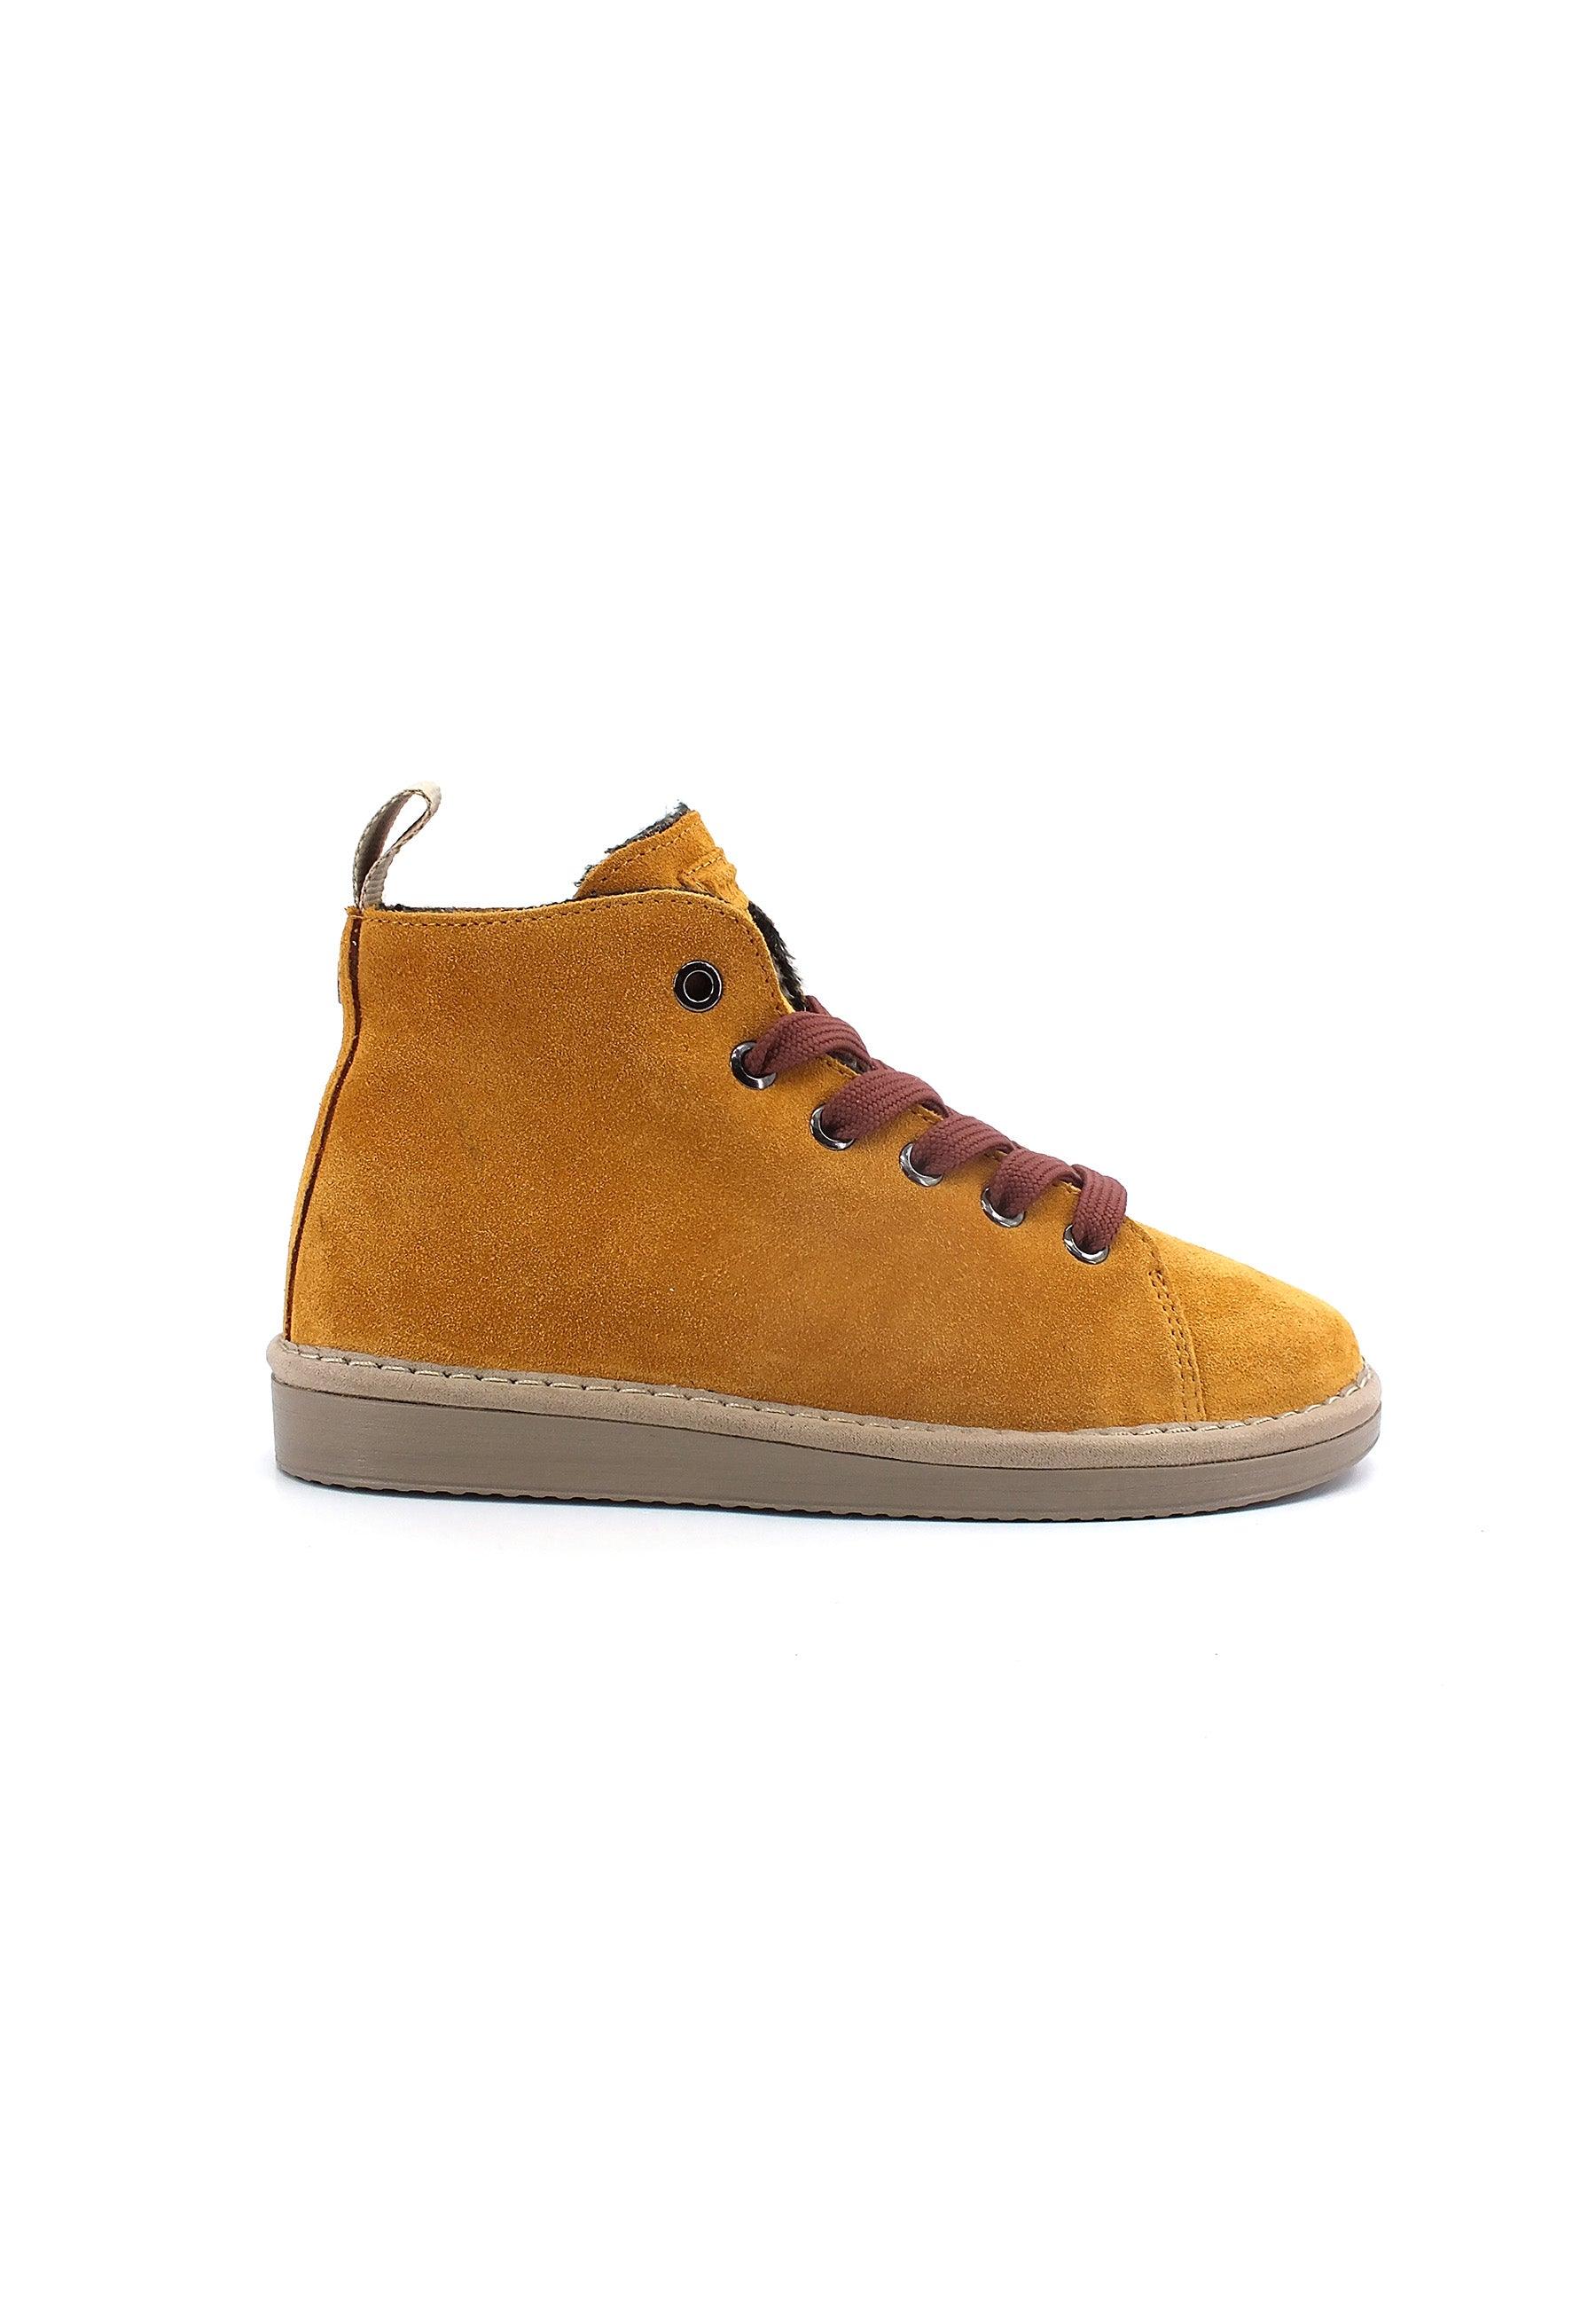 PAN CHIC Ankle Boot Sneaker Pelo Bimbo Curry Brown Cognac P01K1400200006 - Sandrini Calzature e Abbigliamento